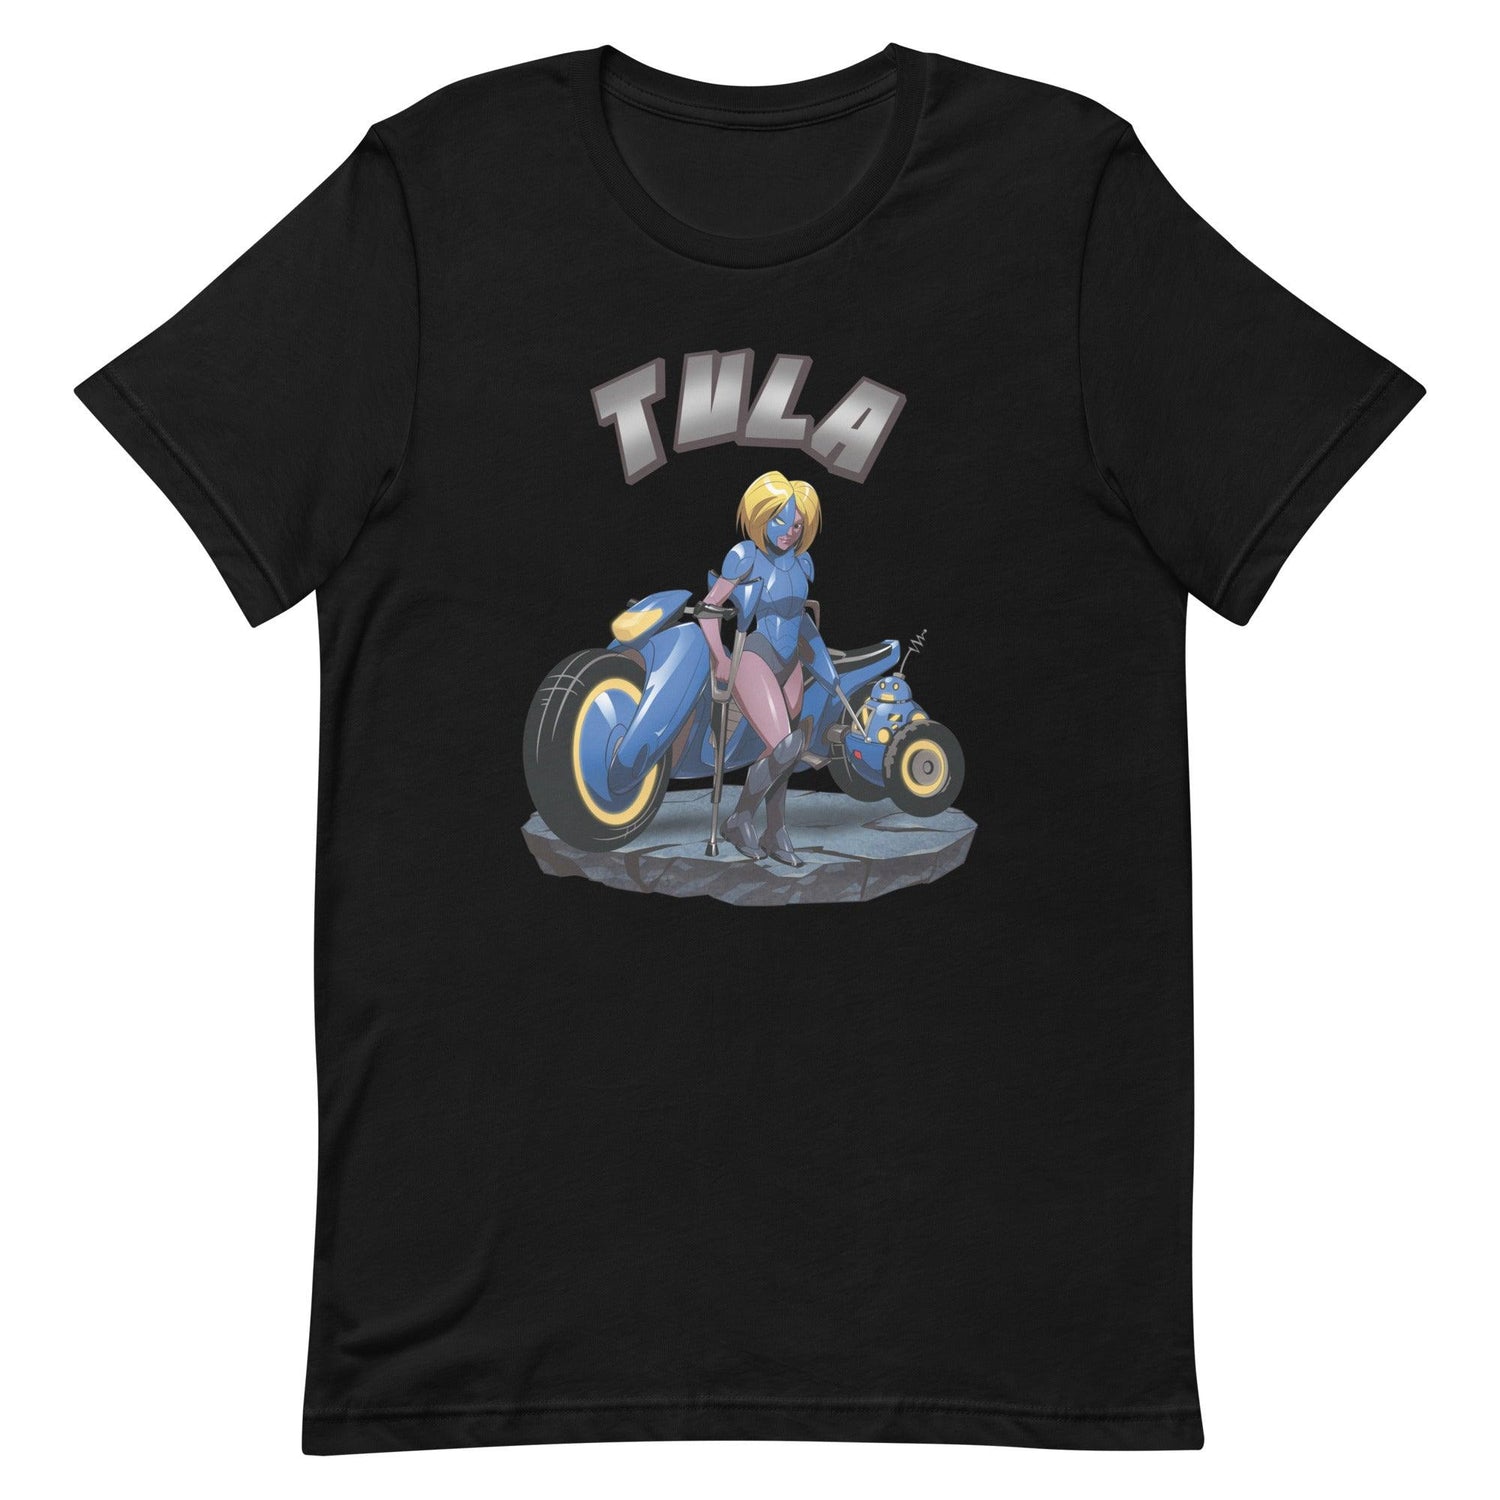 Gary Forbes "Tula" t-shirt - Fan Arch